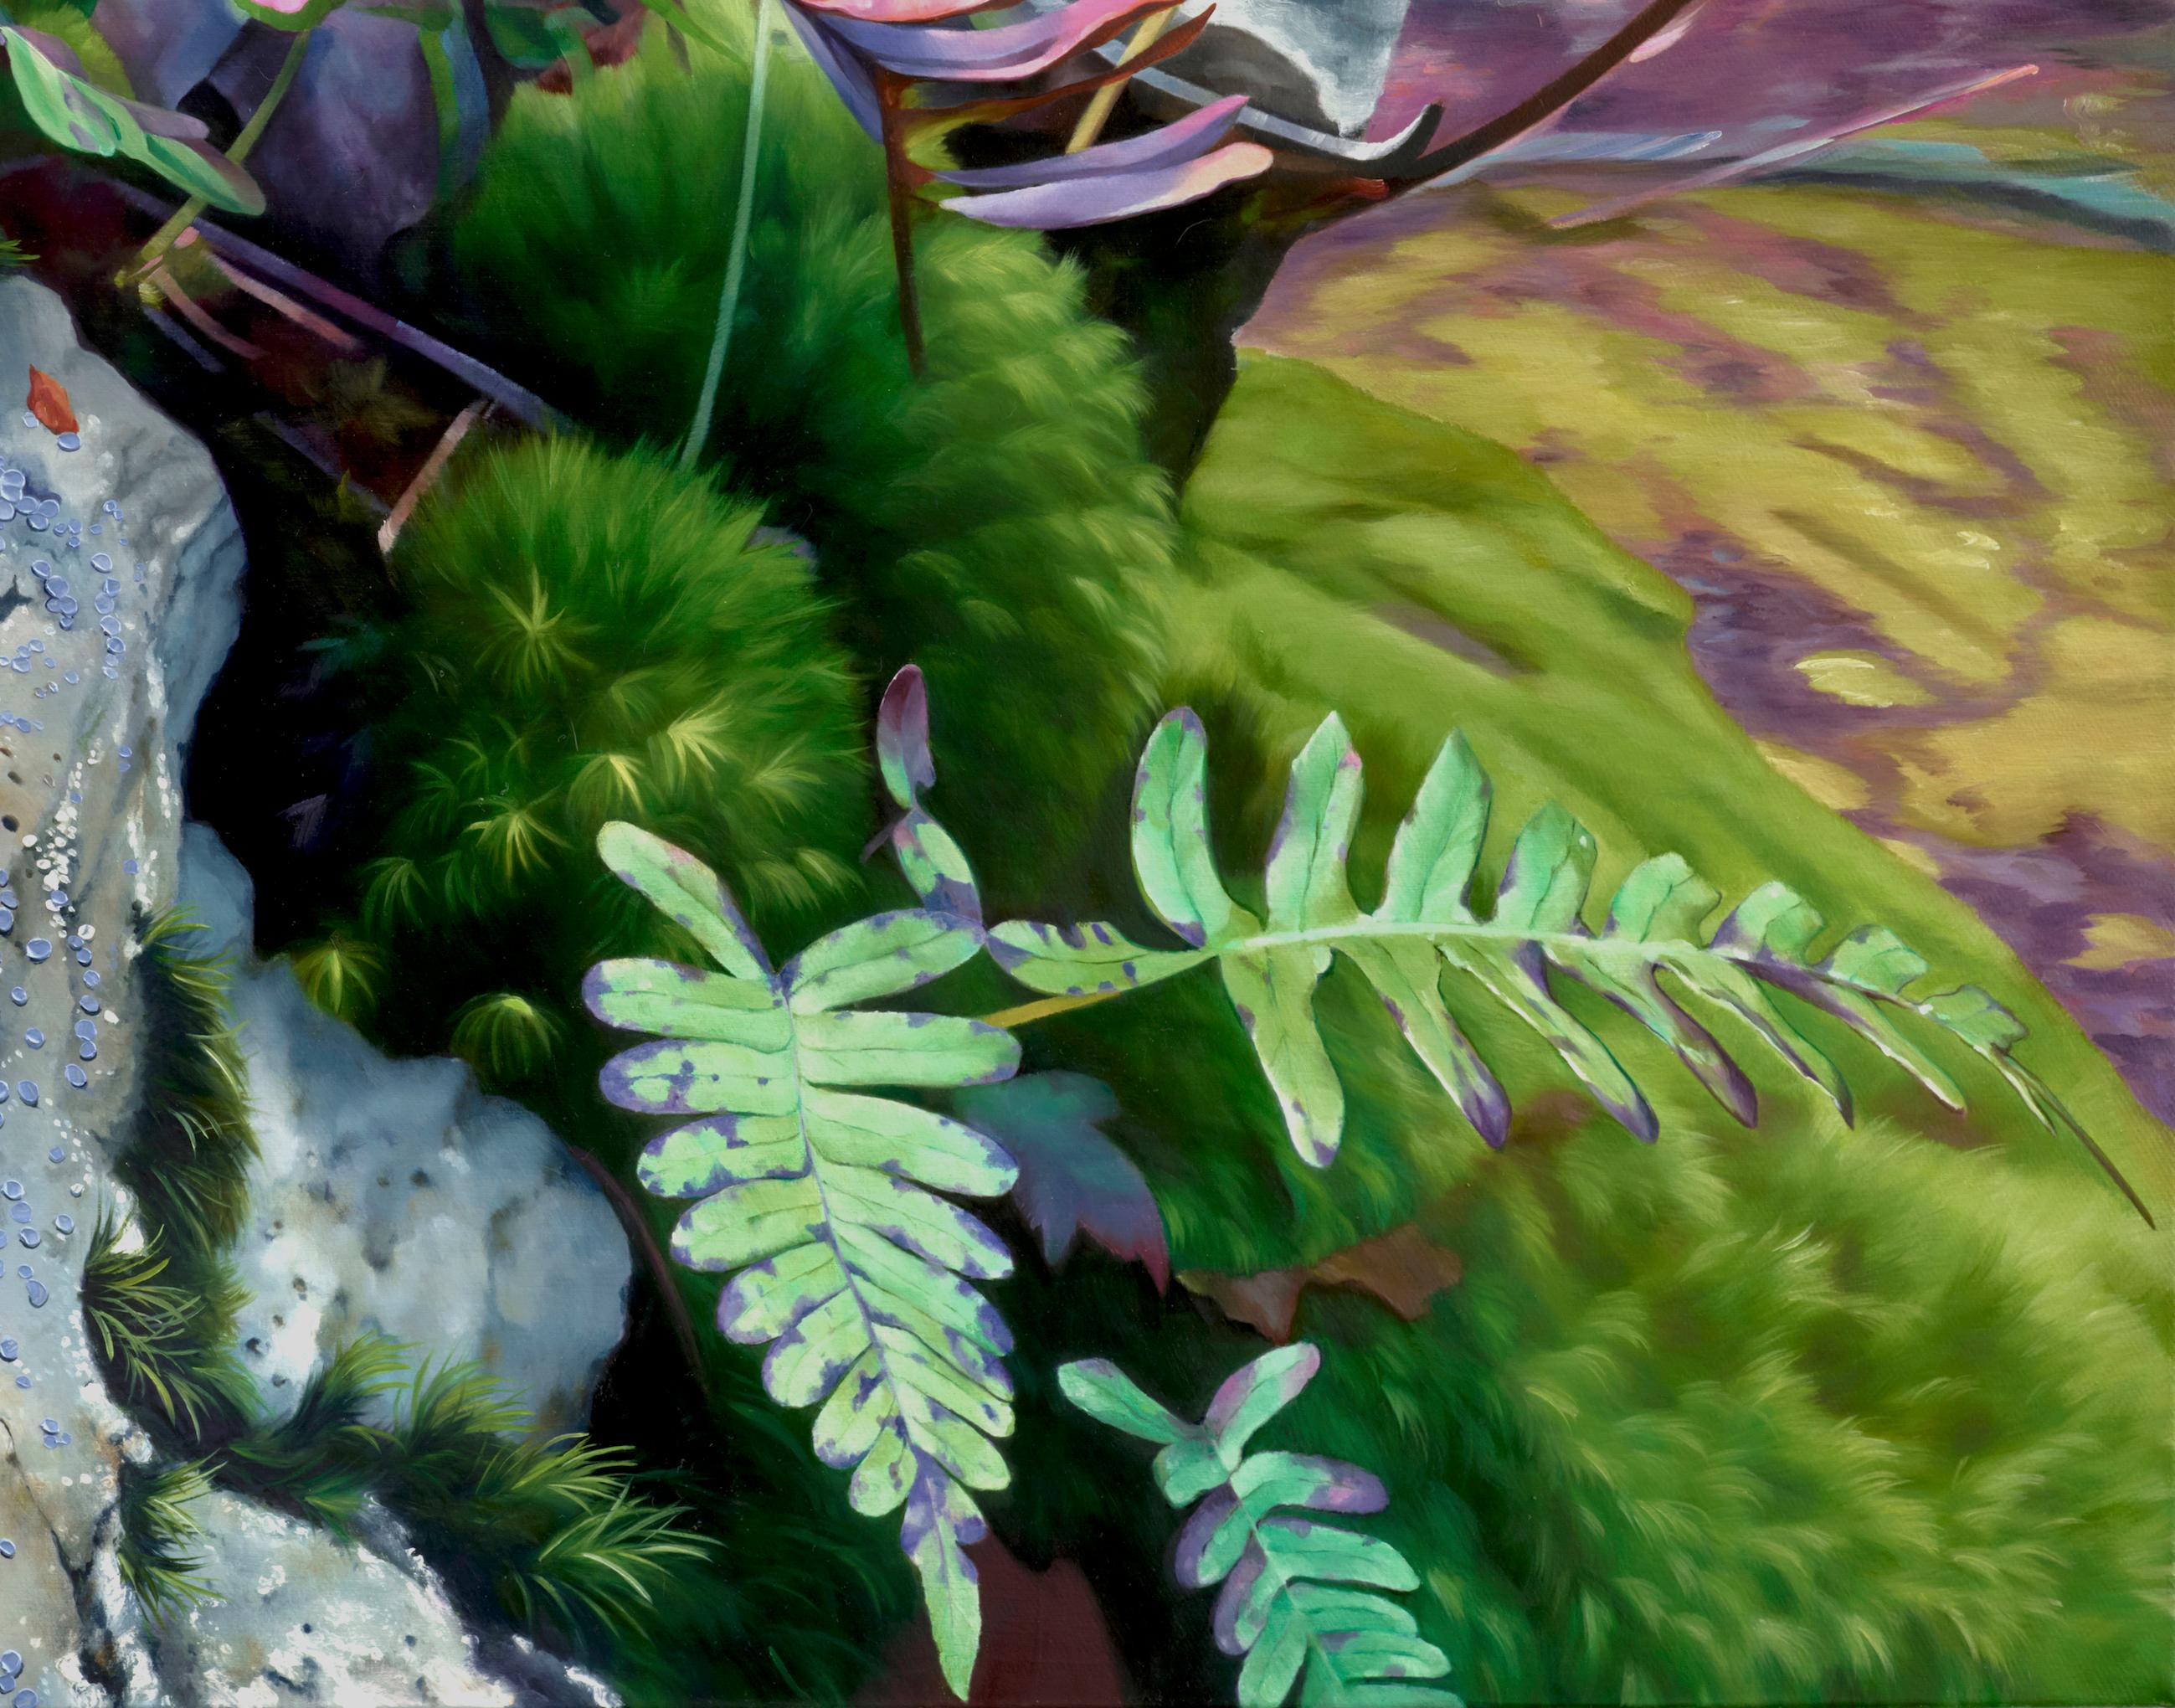 SPRING THAW - rose et vert / roche moussue / forêt du Nord-Ouest Pacifique - Gris Landscape Painting par Alexandra Pacula